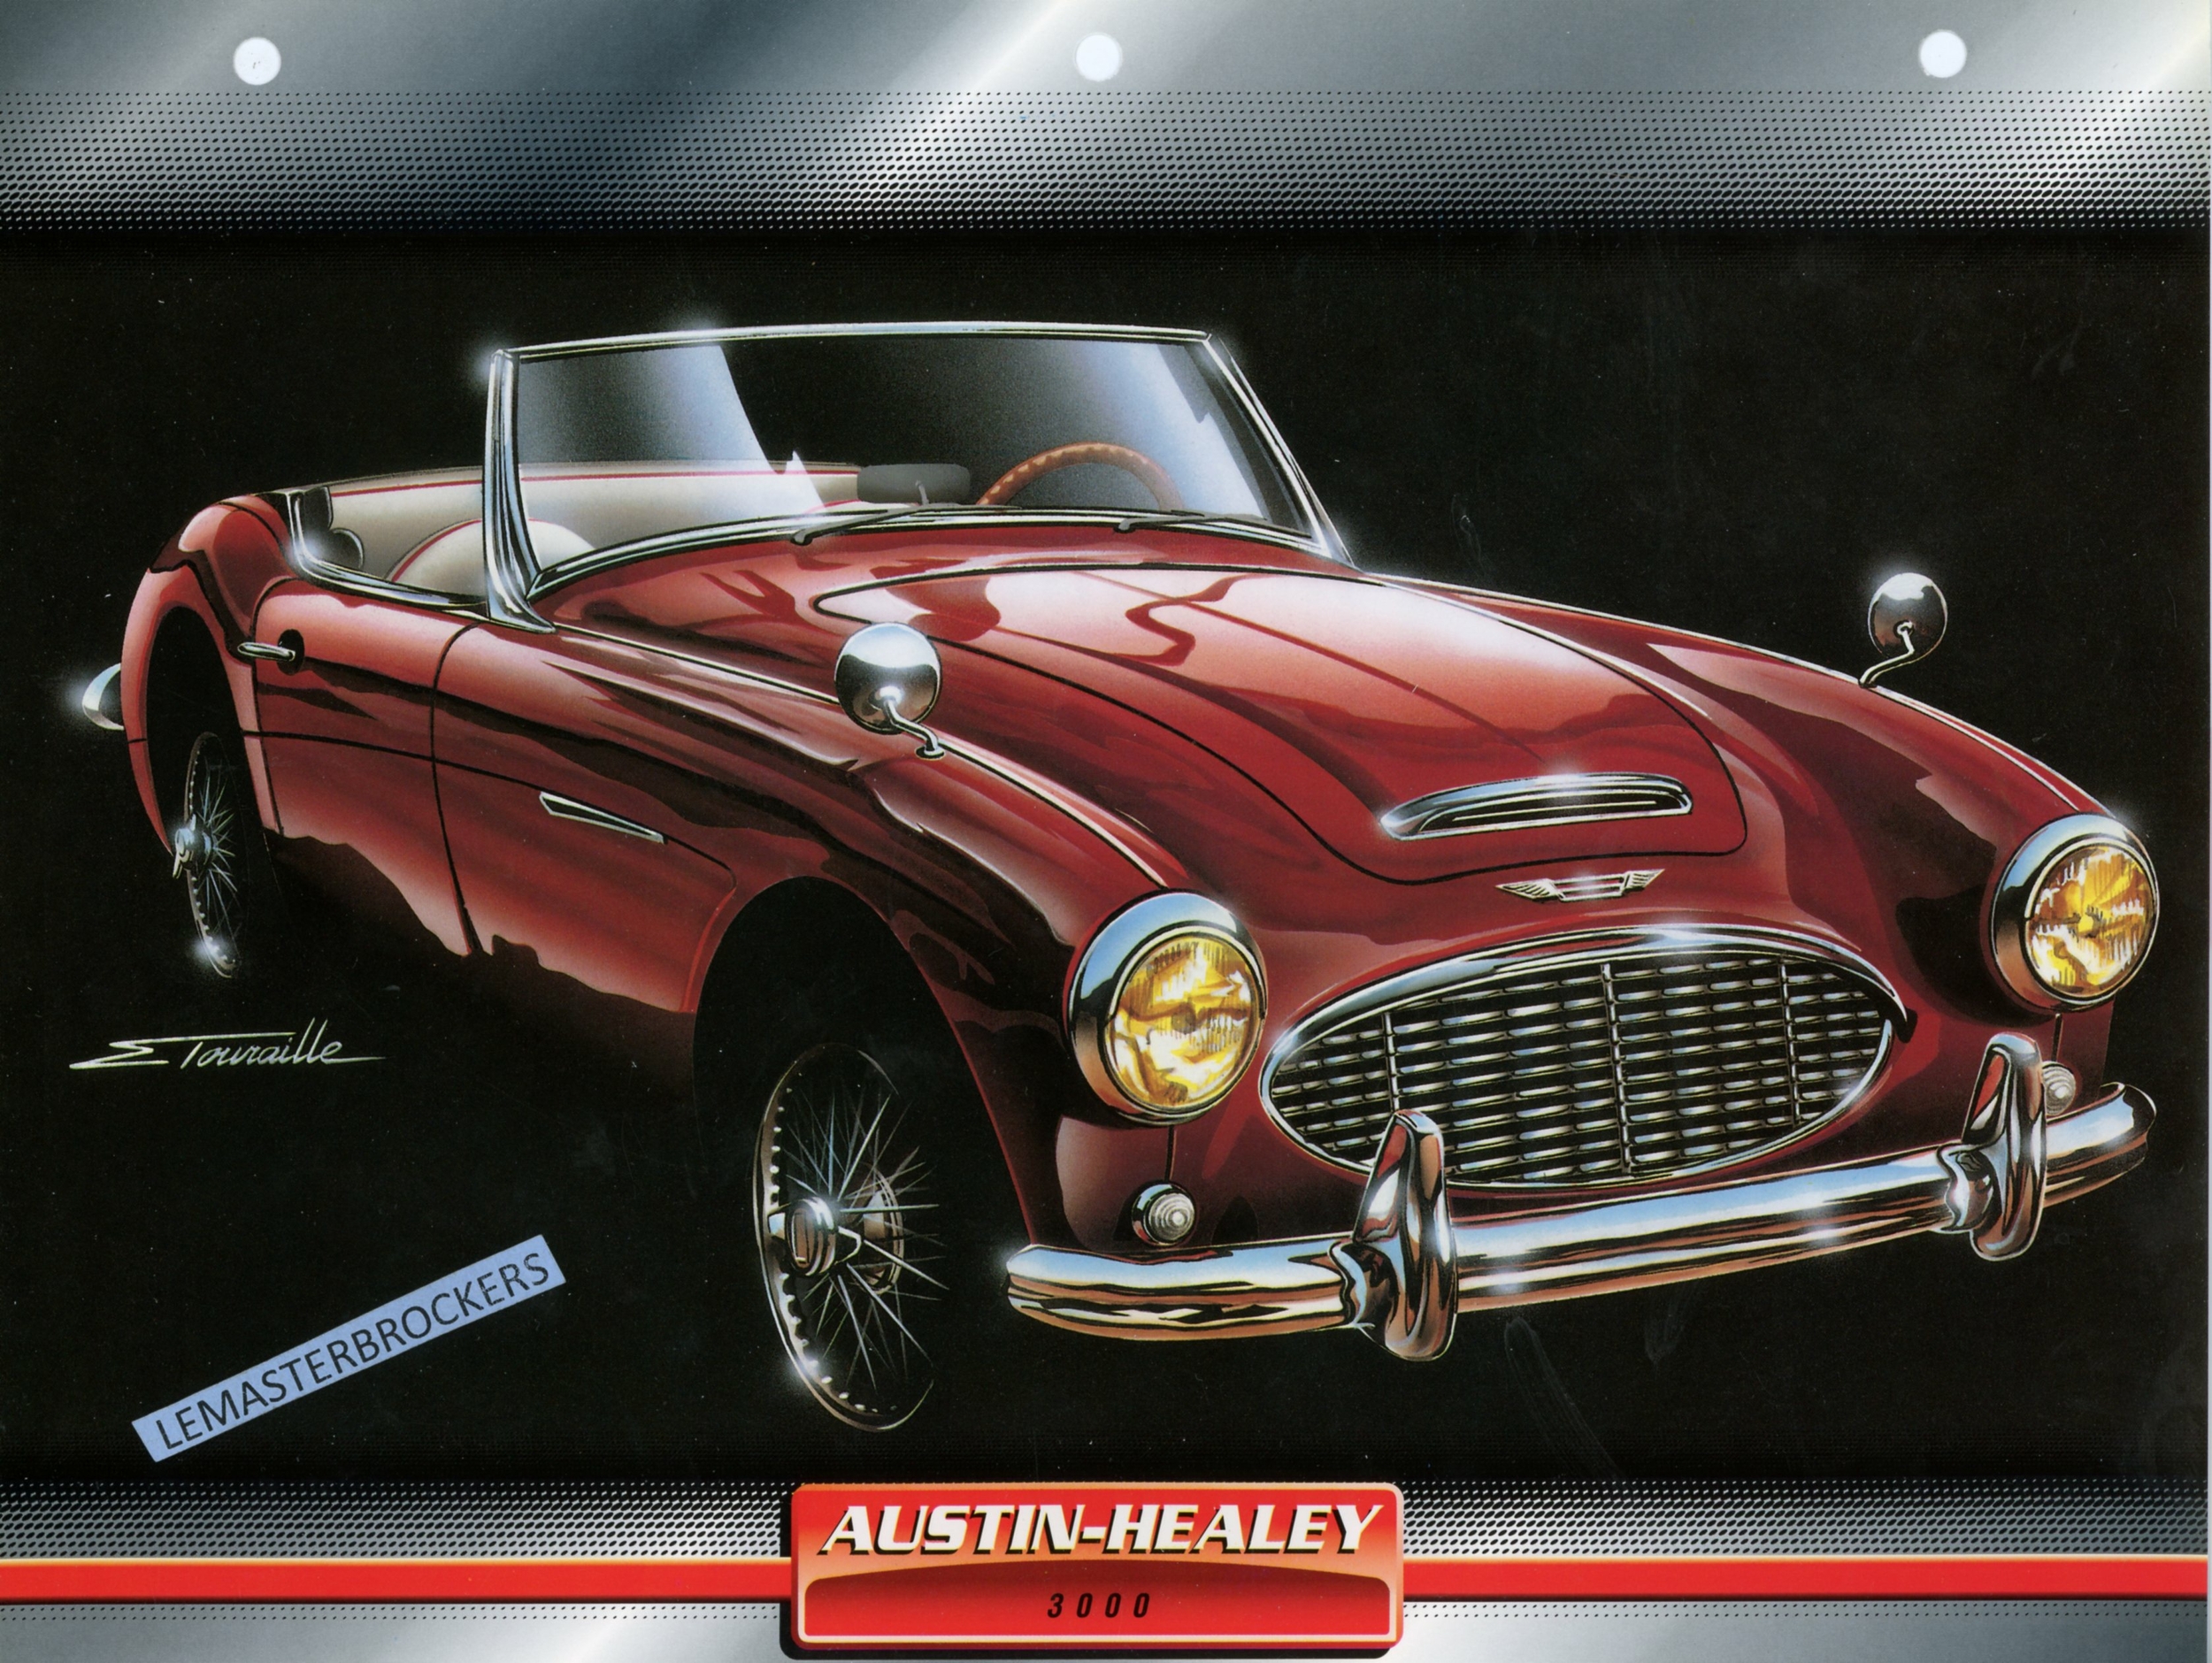 AUSTIN HEALEY 3000 1958 - FICHE AUTO ATLAS LITTÉRATURE AUTOMOBILE CARACTÉRISTIQUES TECHNIQUES